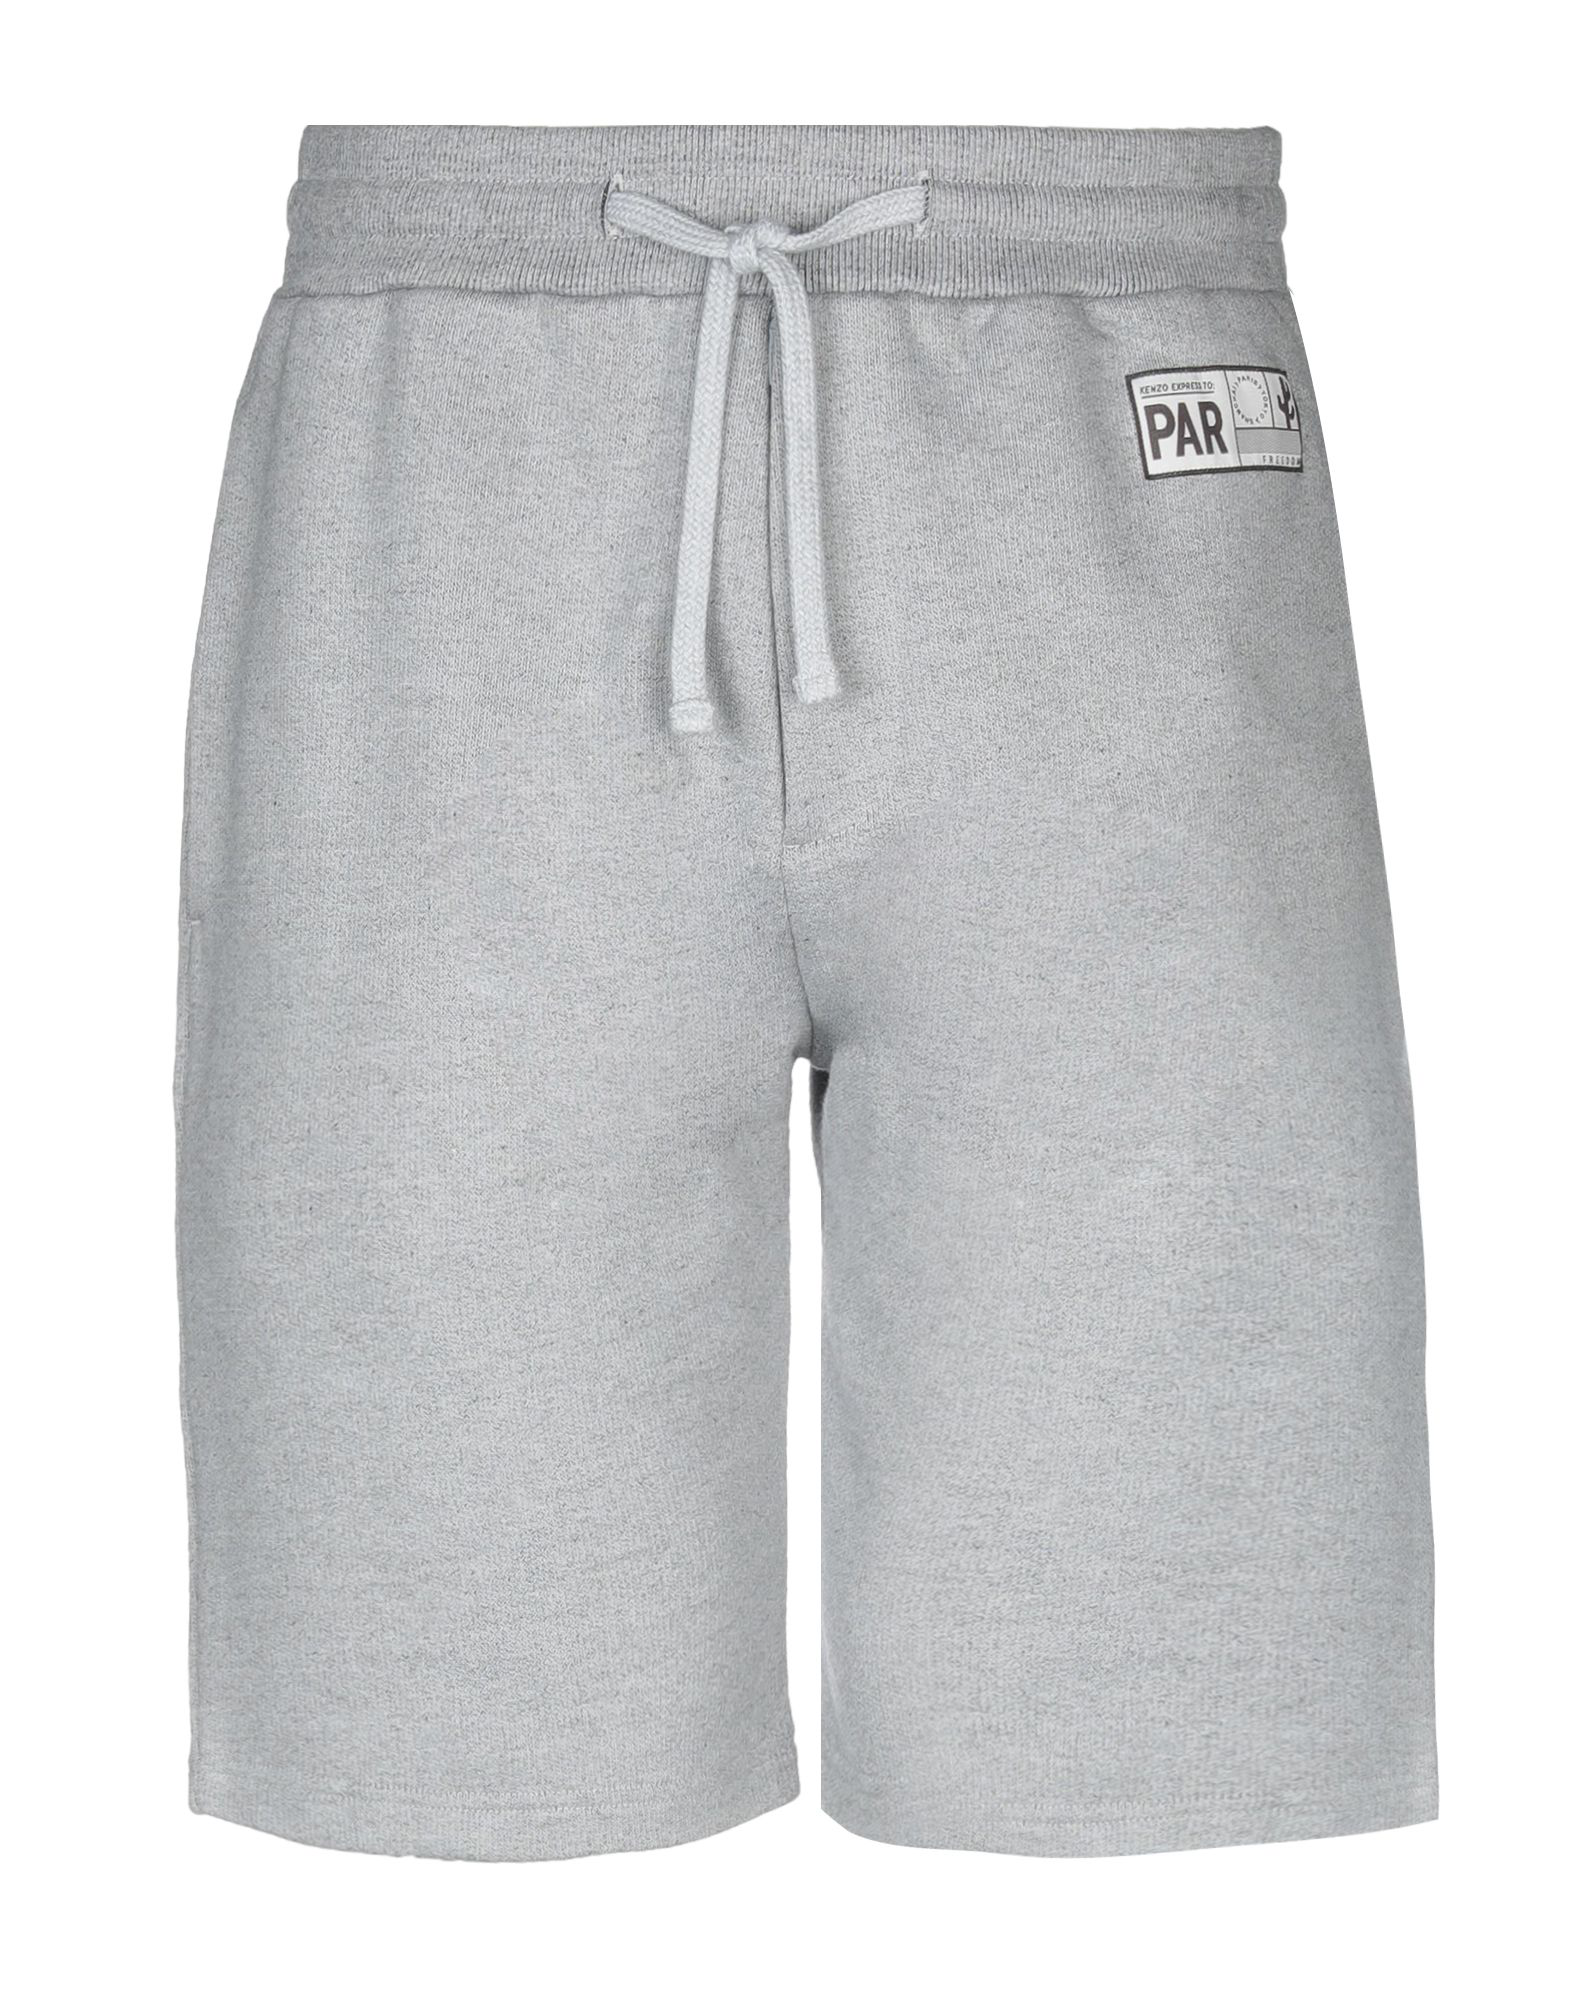 Kenzo Shorts \u0026 Bermuda In Light Grey 